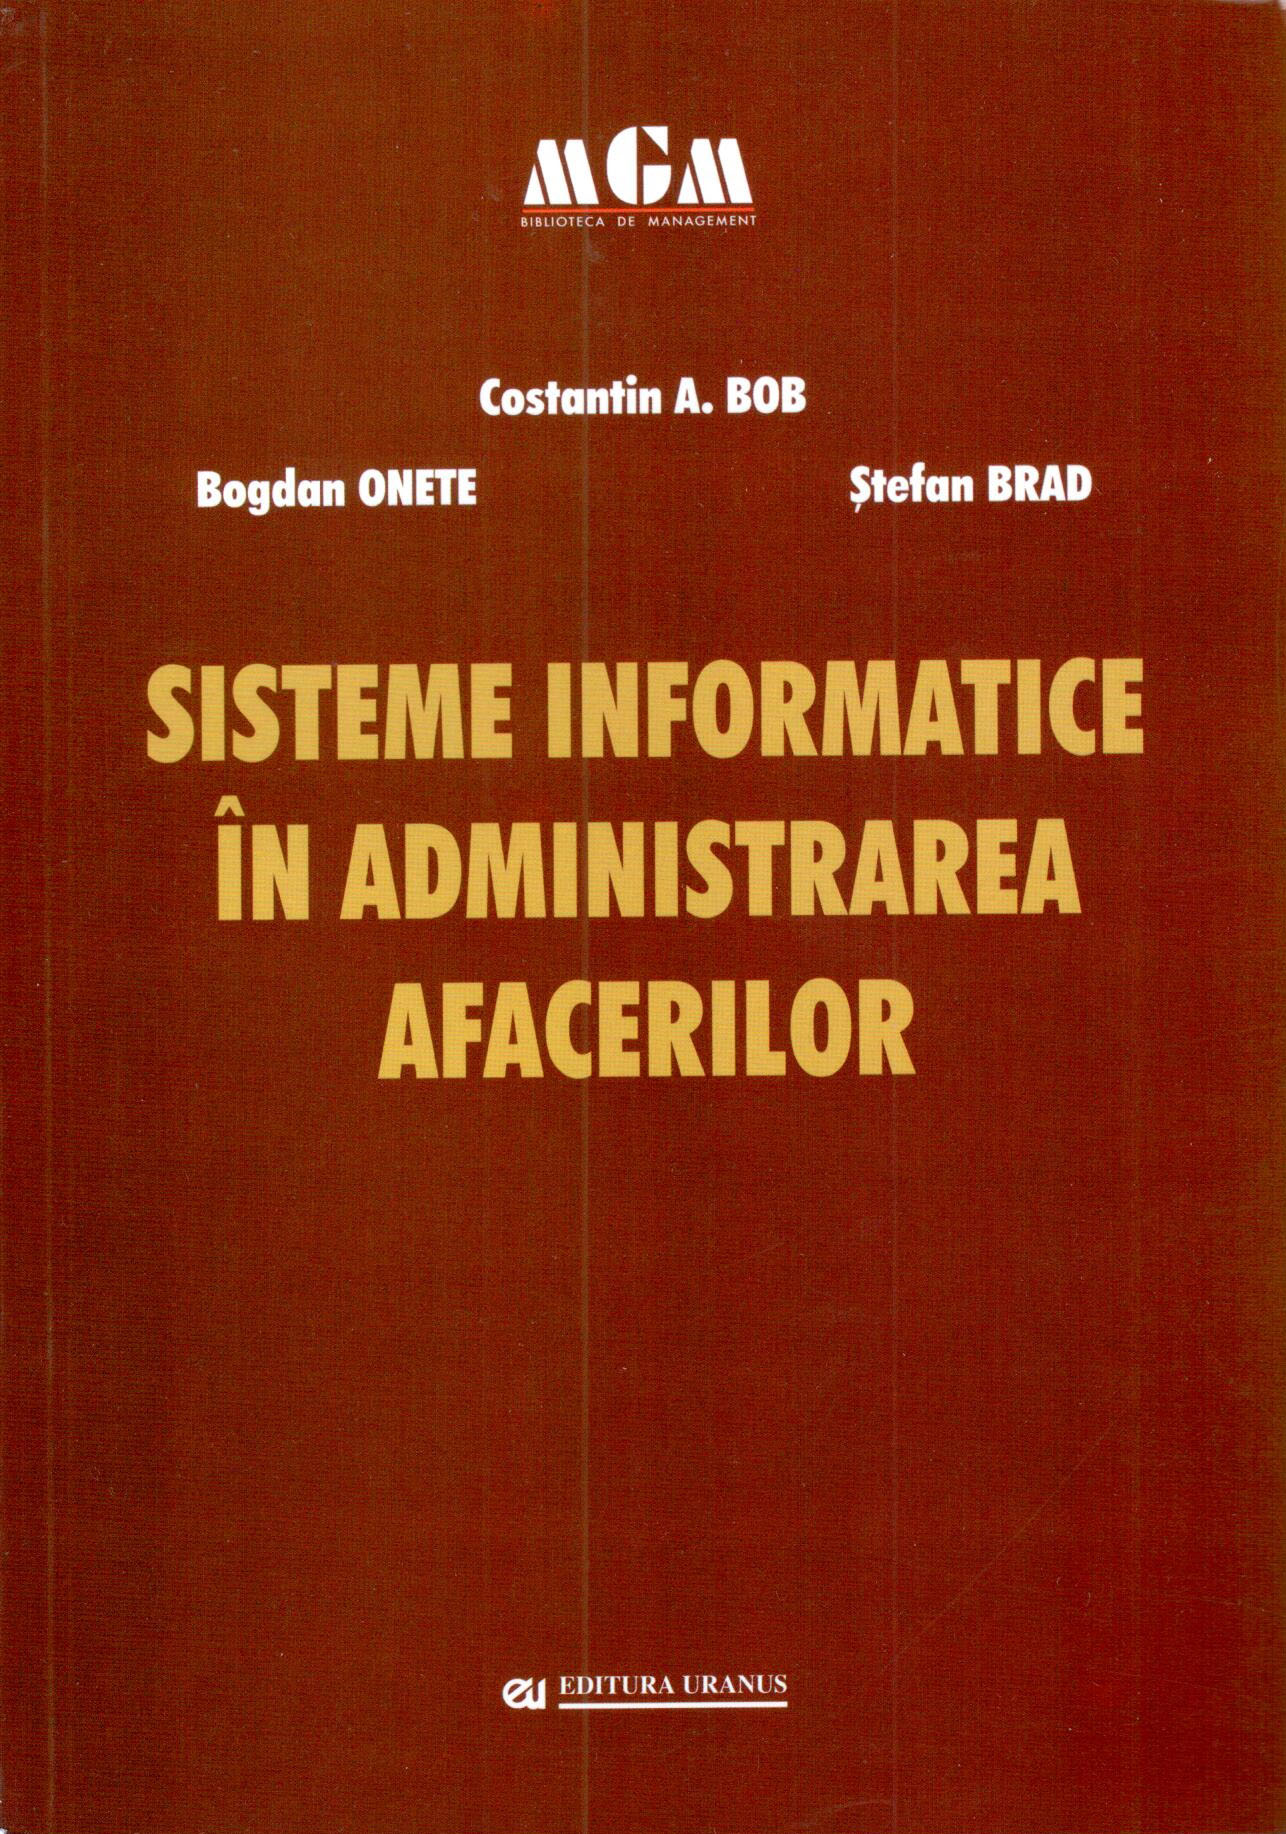 PDF Sisteme informatice in administrarea afacerilor | Bogdan Onete, Constantin A. Bob, Stefan Brad carturesti.ro Business si economie